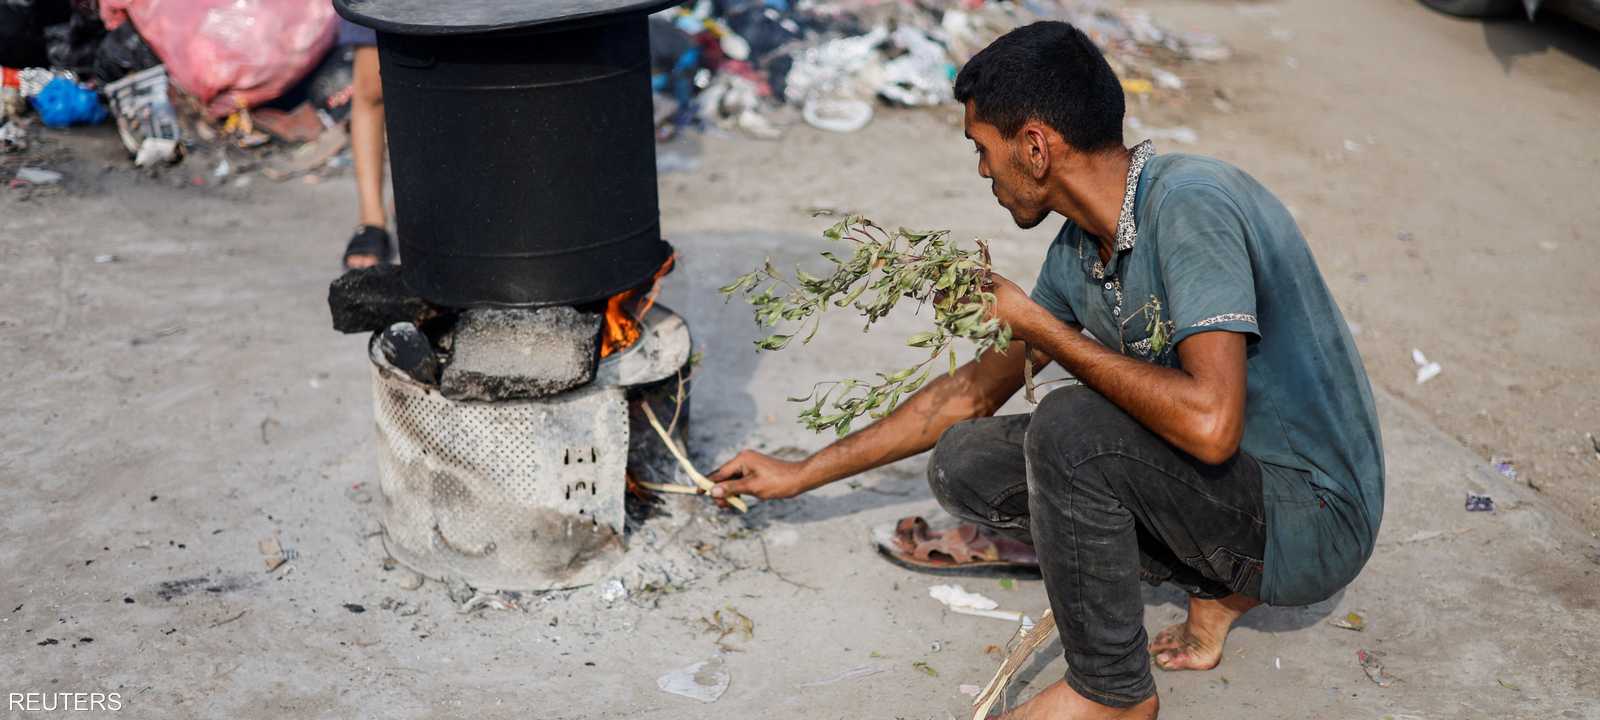 يعيش سكان غزة ظروفا صعبة بسبب الحصار والحرب